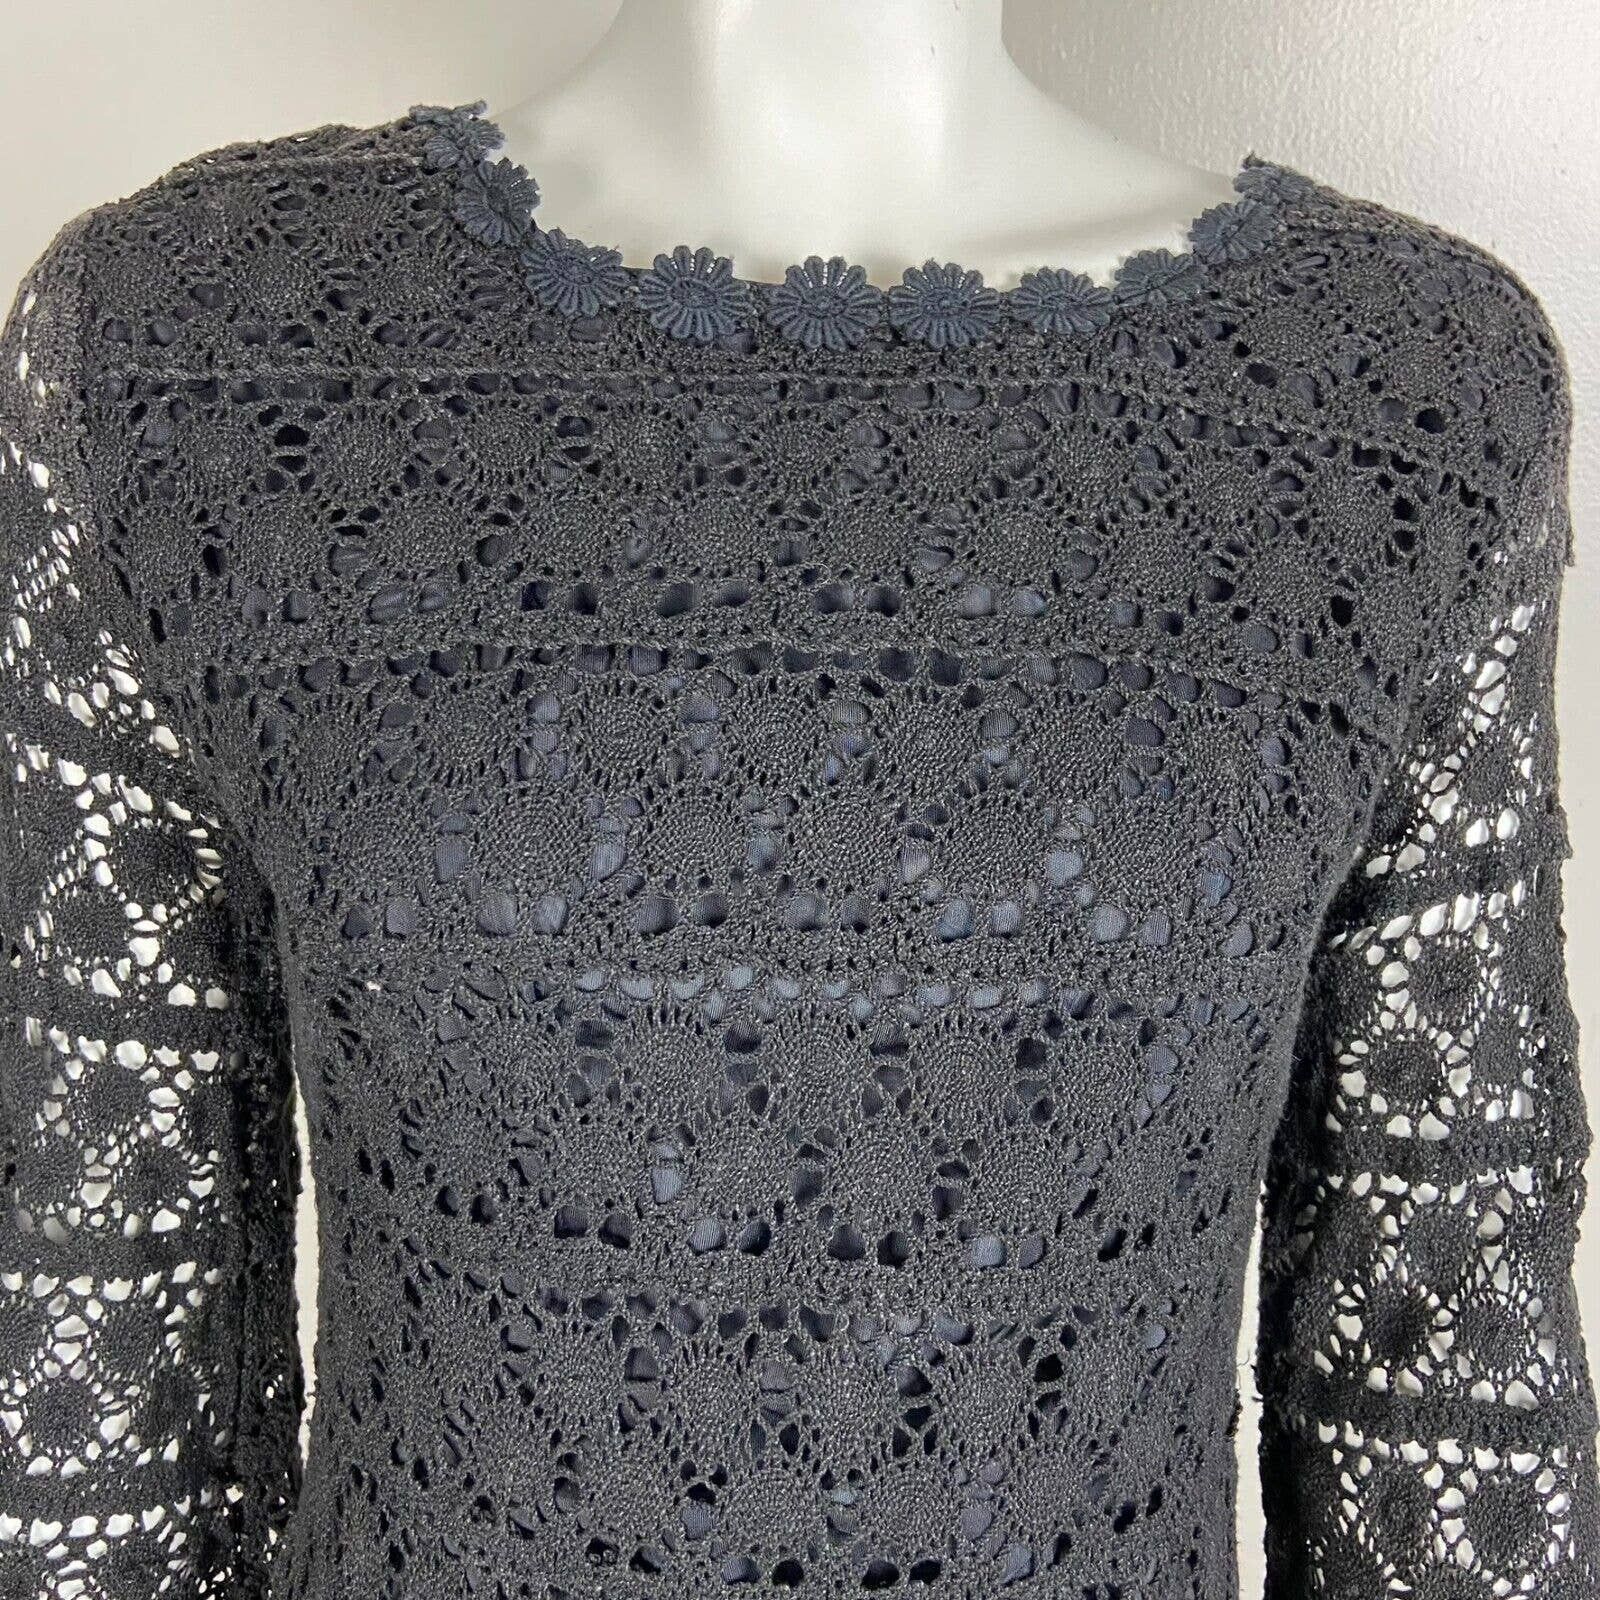 Handmade Vintage 60s 70s Black Crochet Lace Mini Shift Dress Size S / US 4 / IT 40 - 4 Thumbnail